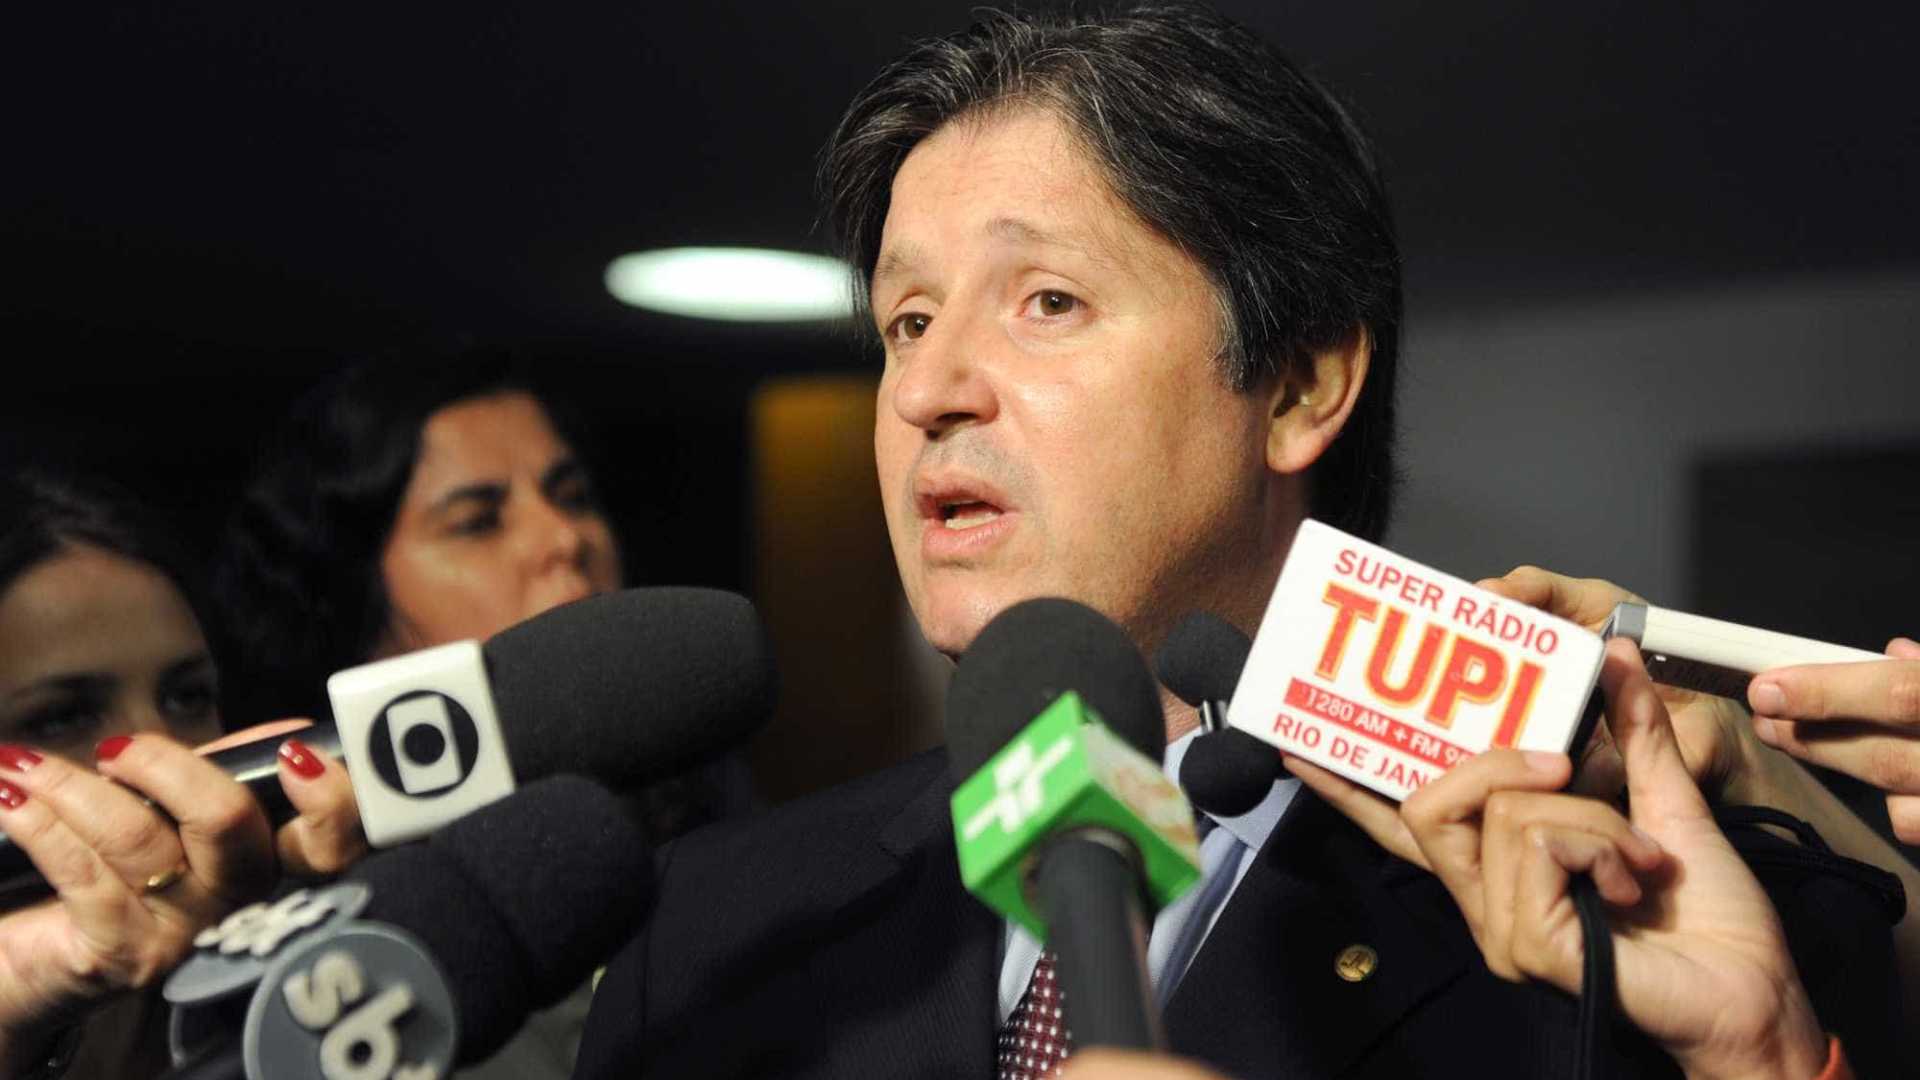 Escritos de Rocha Loures sugerem ação pró-impeachment de Dilma